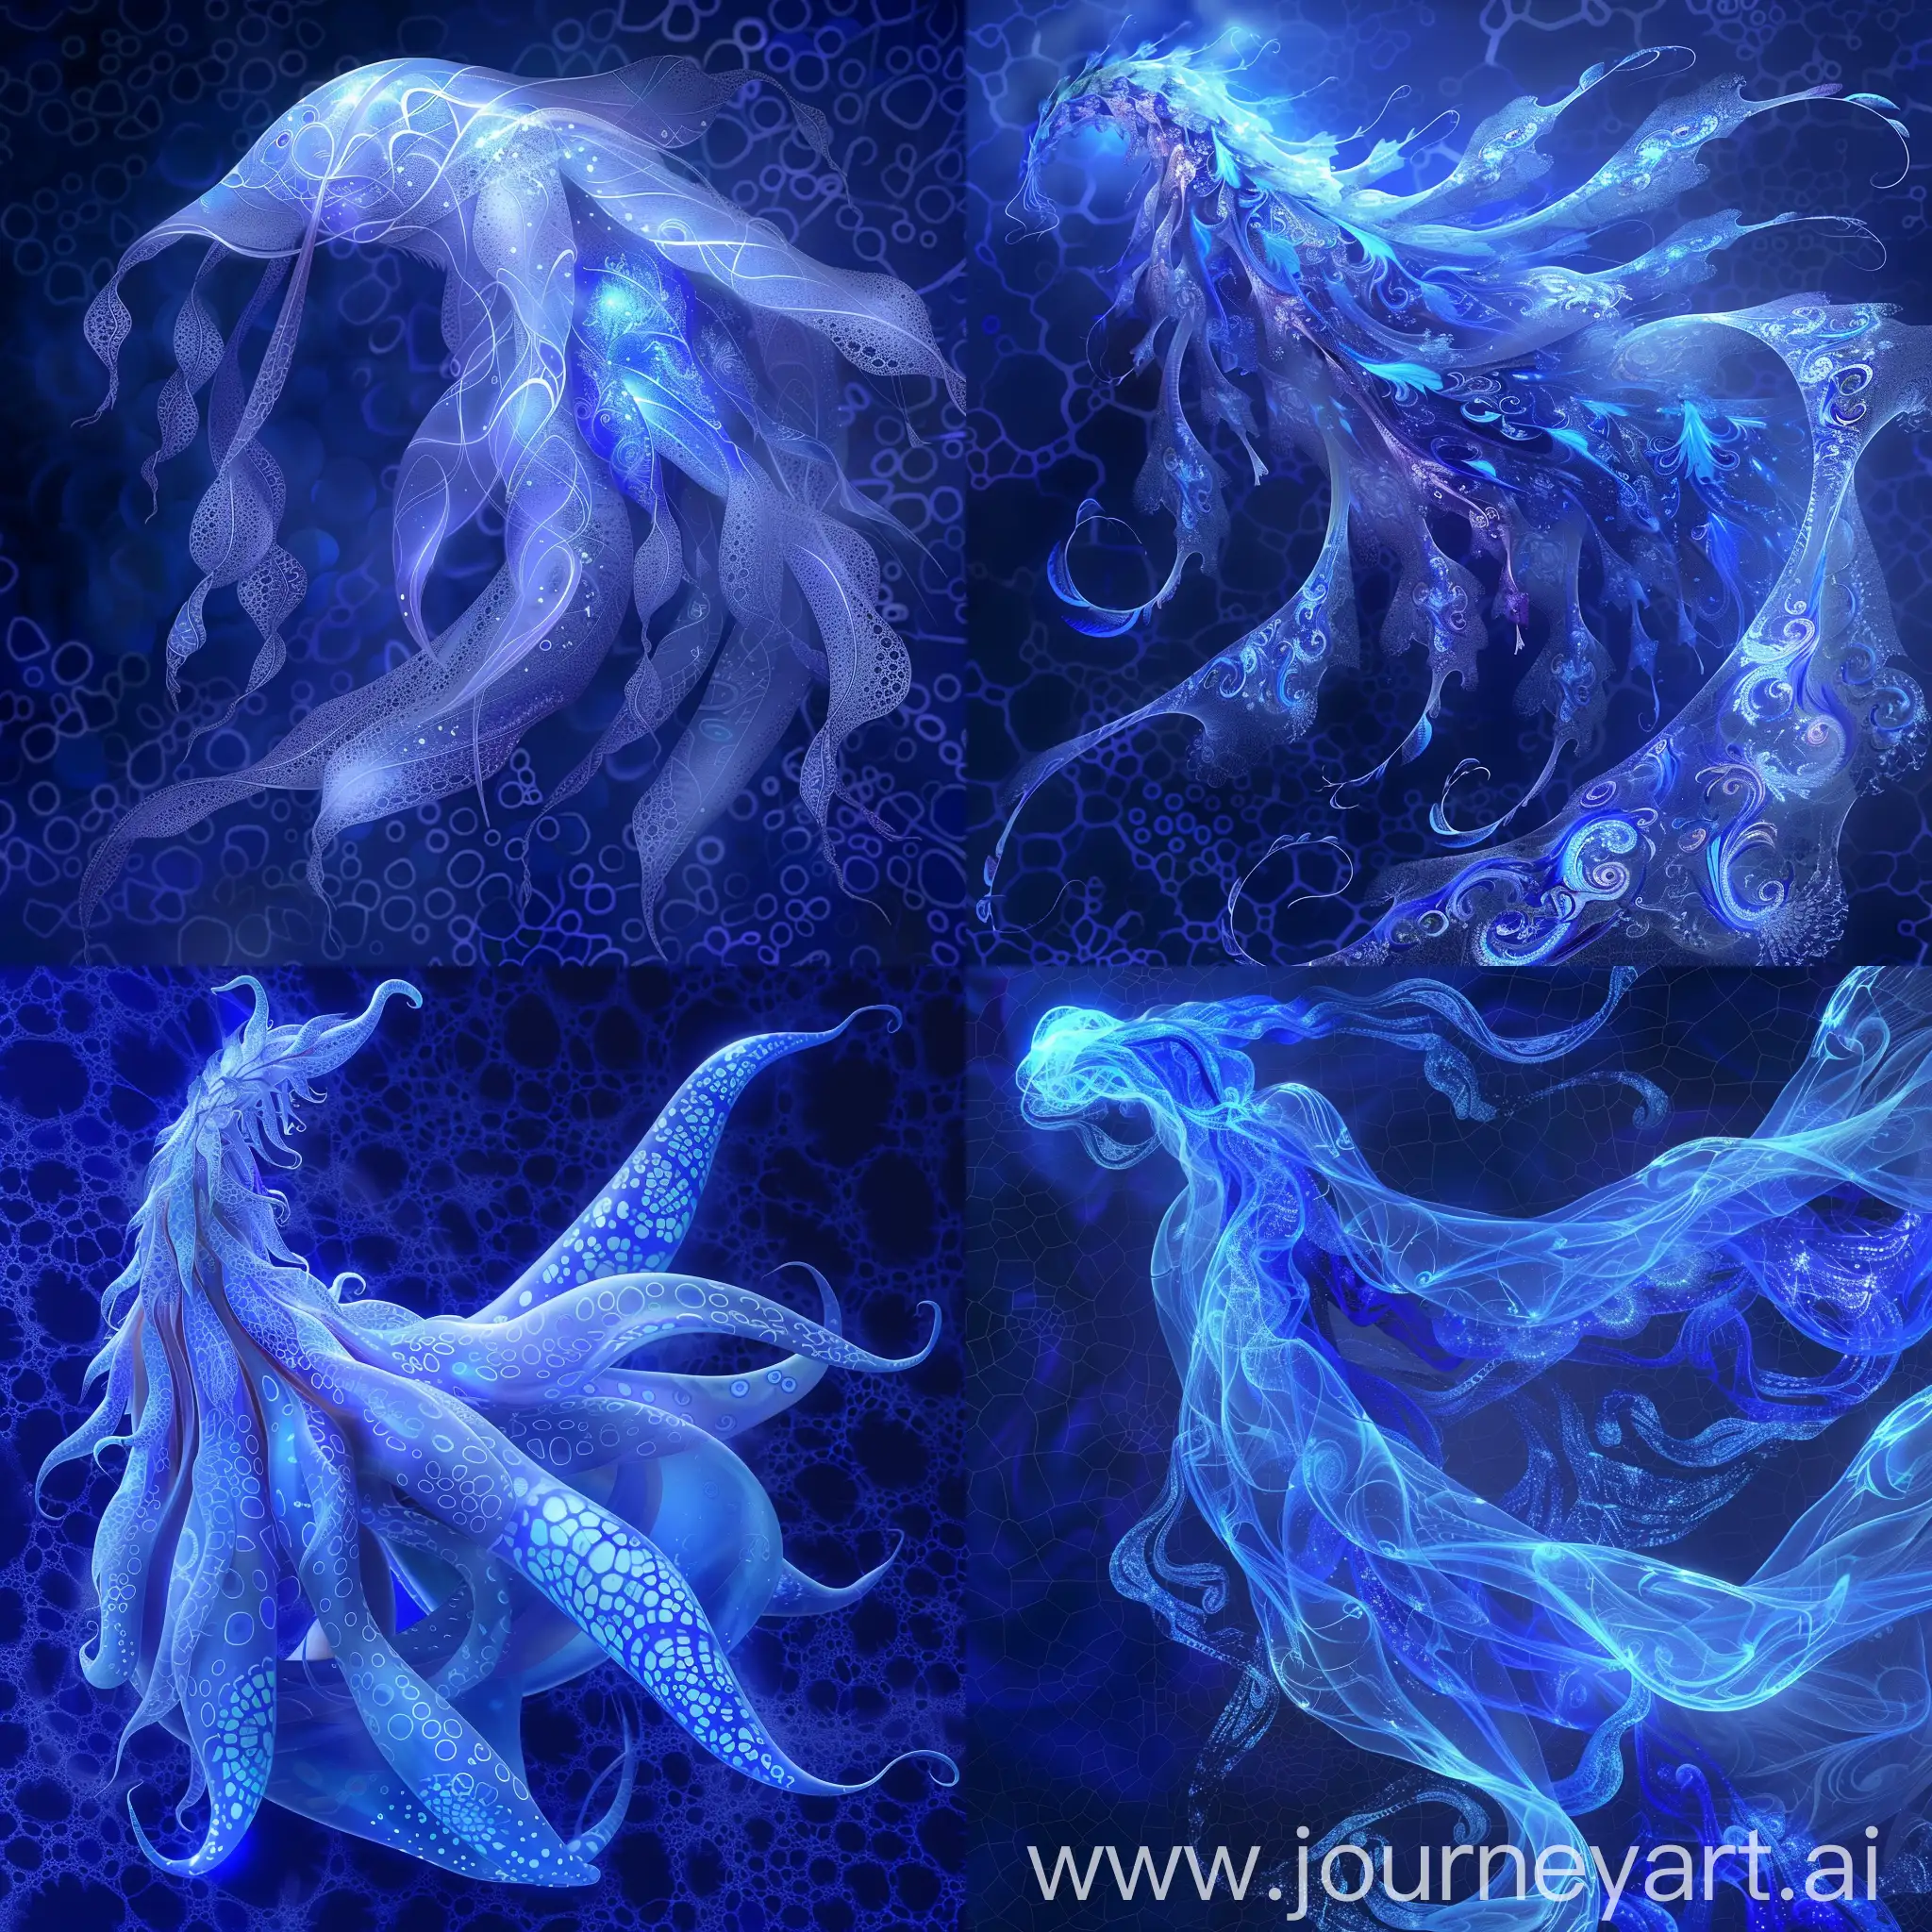 Bioluminescent-Silk-Creature-in-a-Surreal-Deep-Blue-Fractal-World